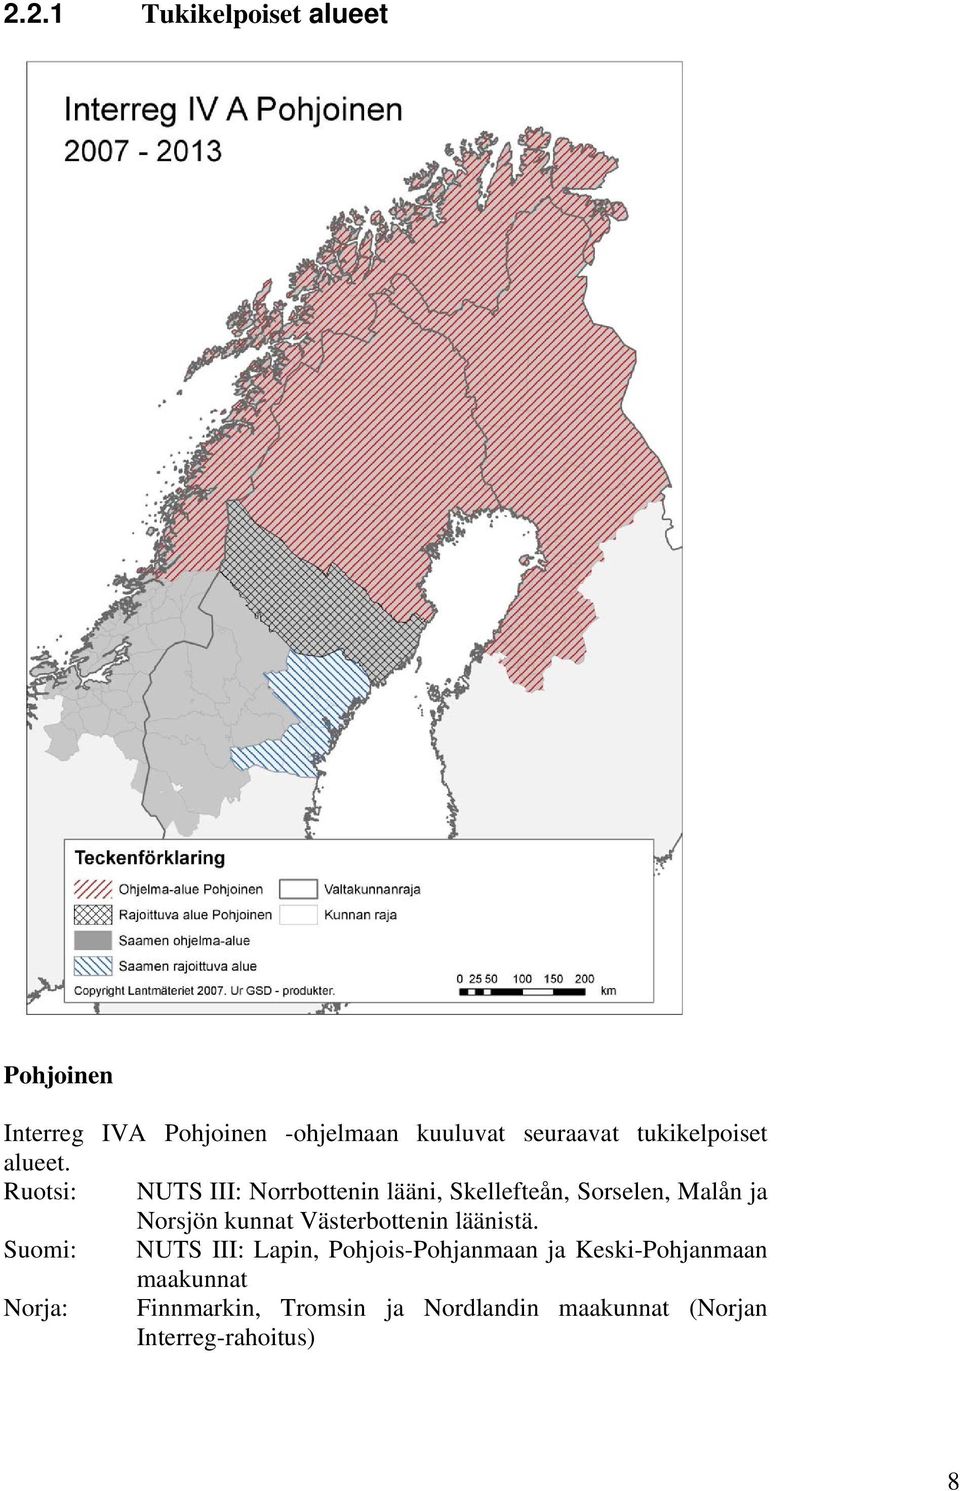 Ruotsi: NUTS III: Norrbottenin lääni, Skellefteån, Sorselen, Malån ja Norsjön kunnat